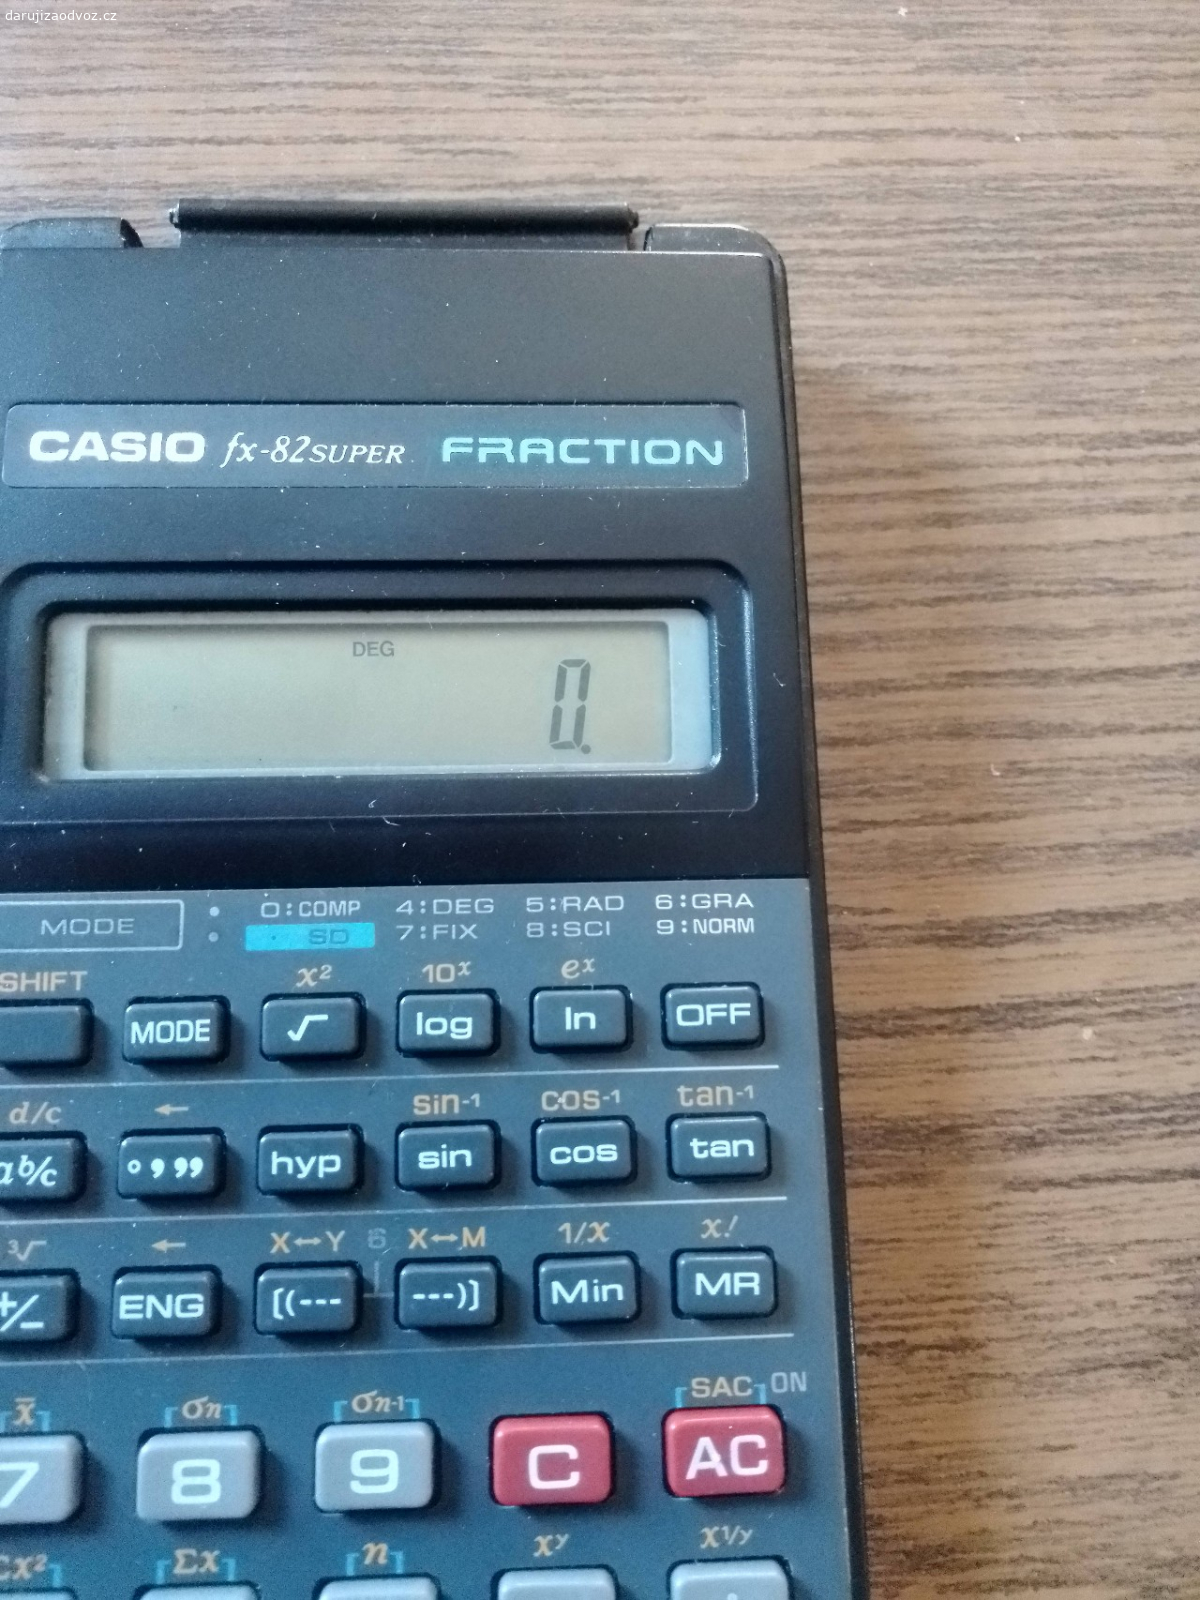 Daruji víceúčelovou kalkulačku. Již nevyužívaná kalkulačka s více funkcemi,zn.Casio, vhodná pro výpočet složitějších matematických operací